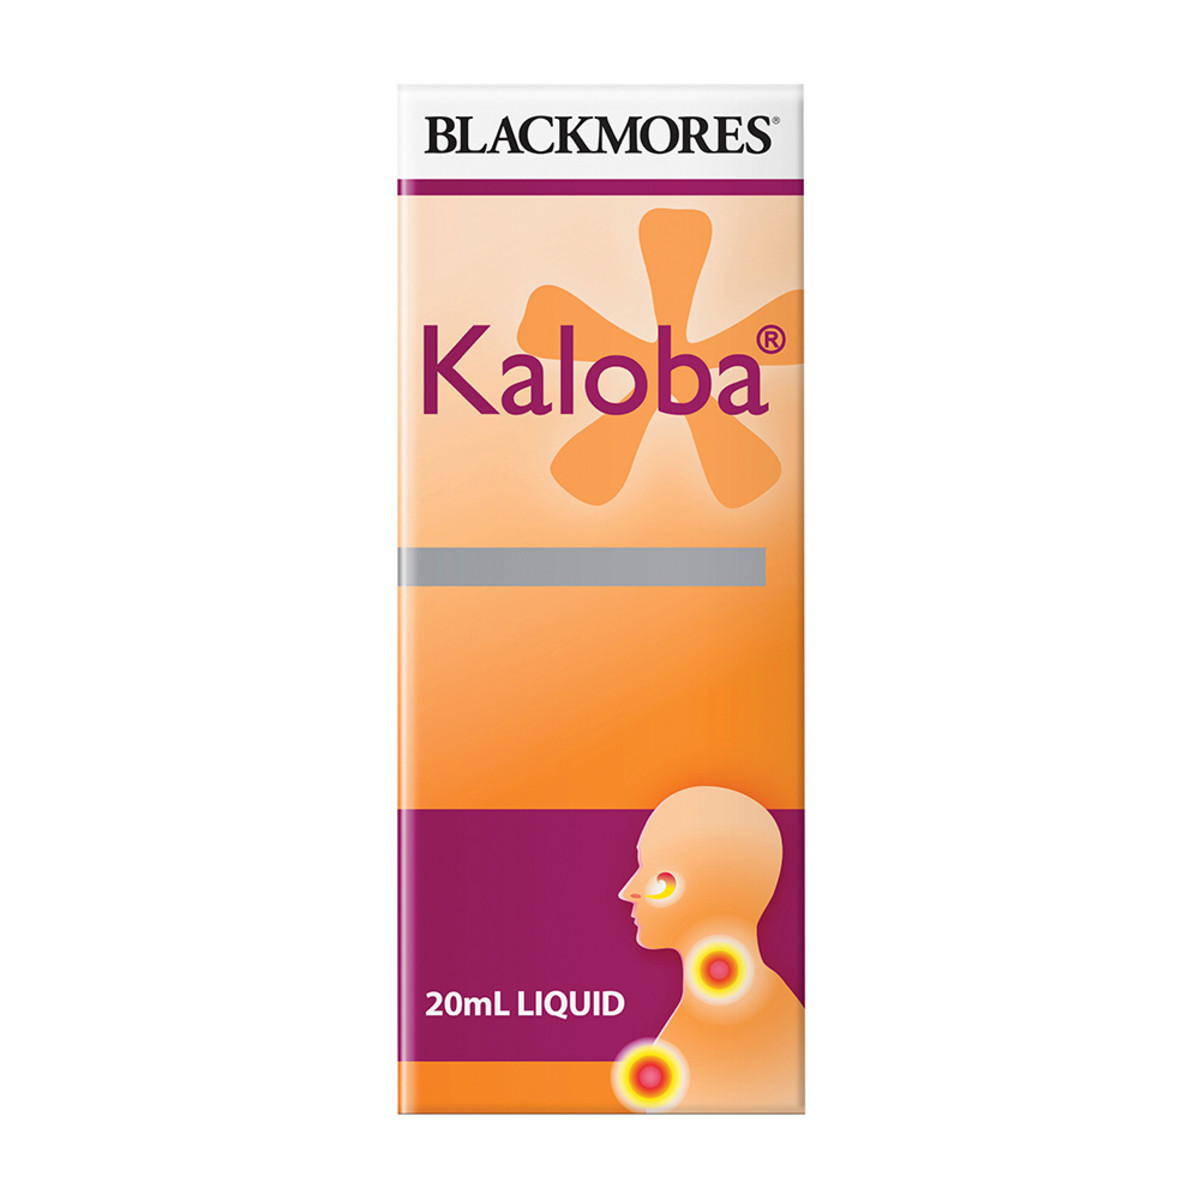 BLACKMORES - Kaloba